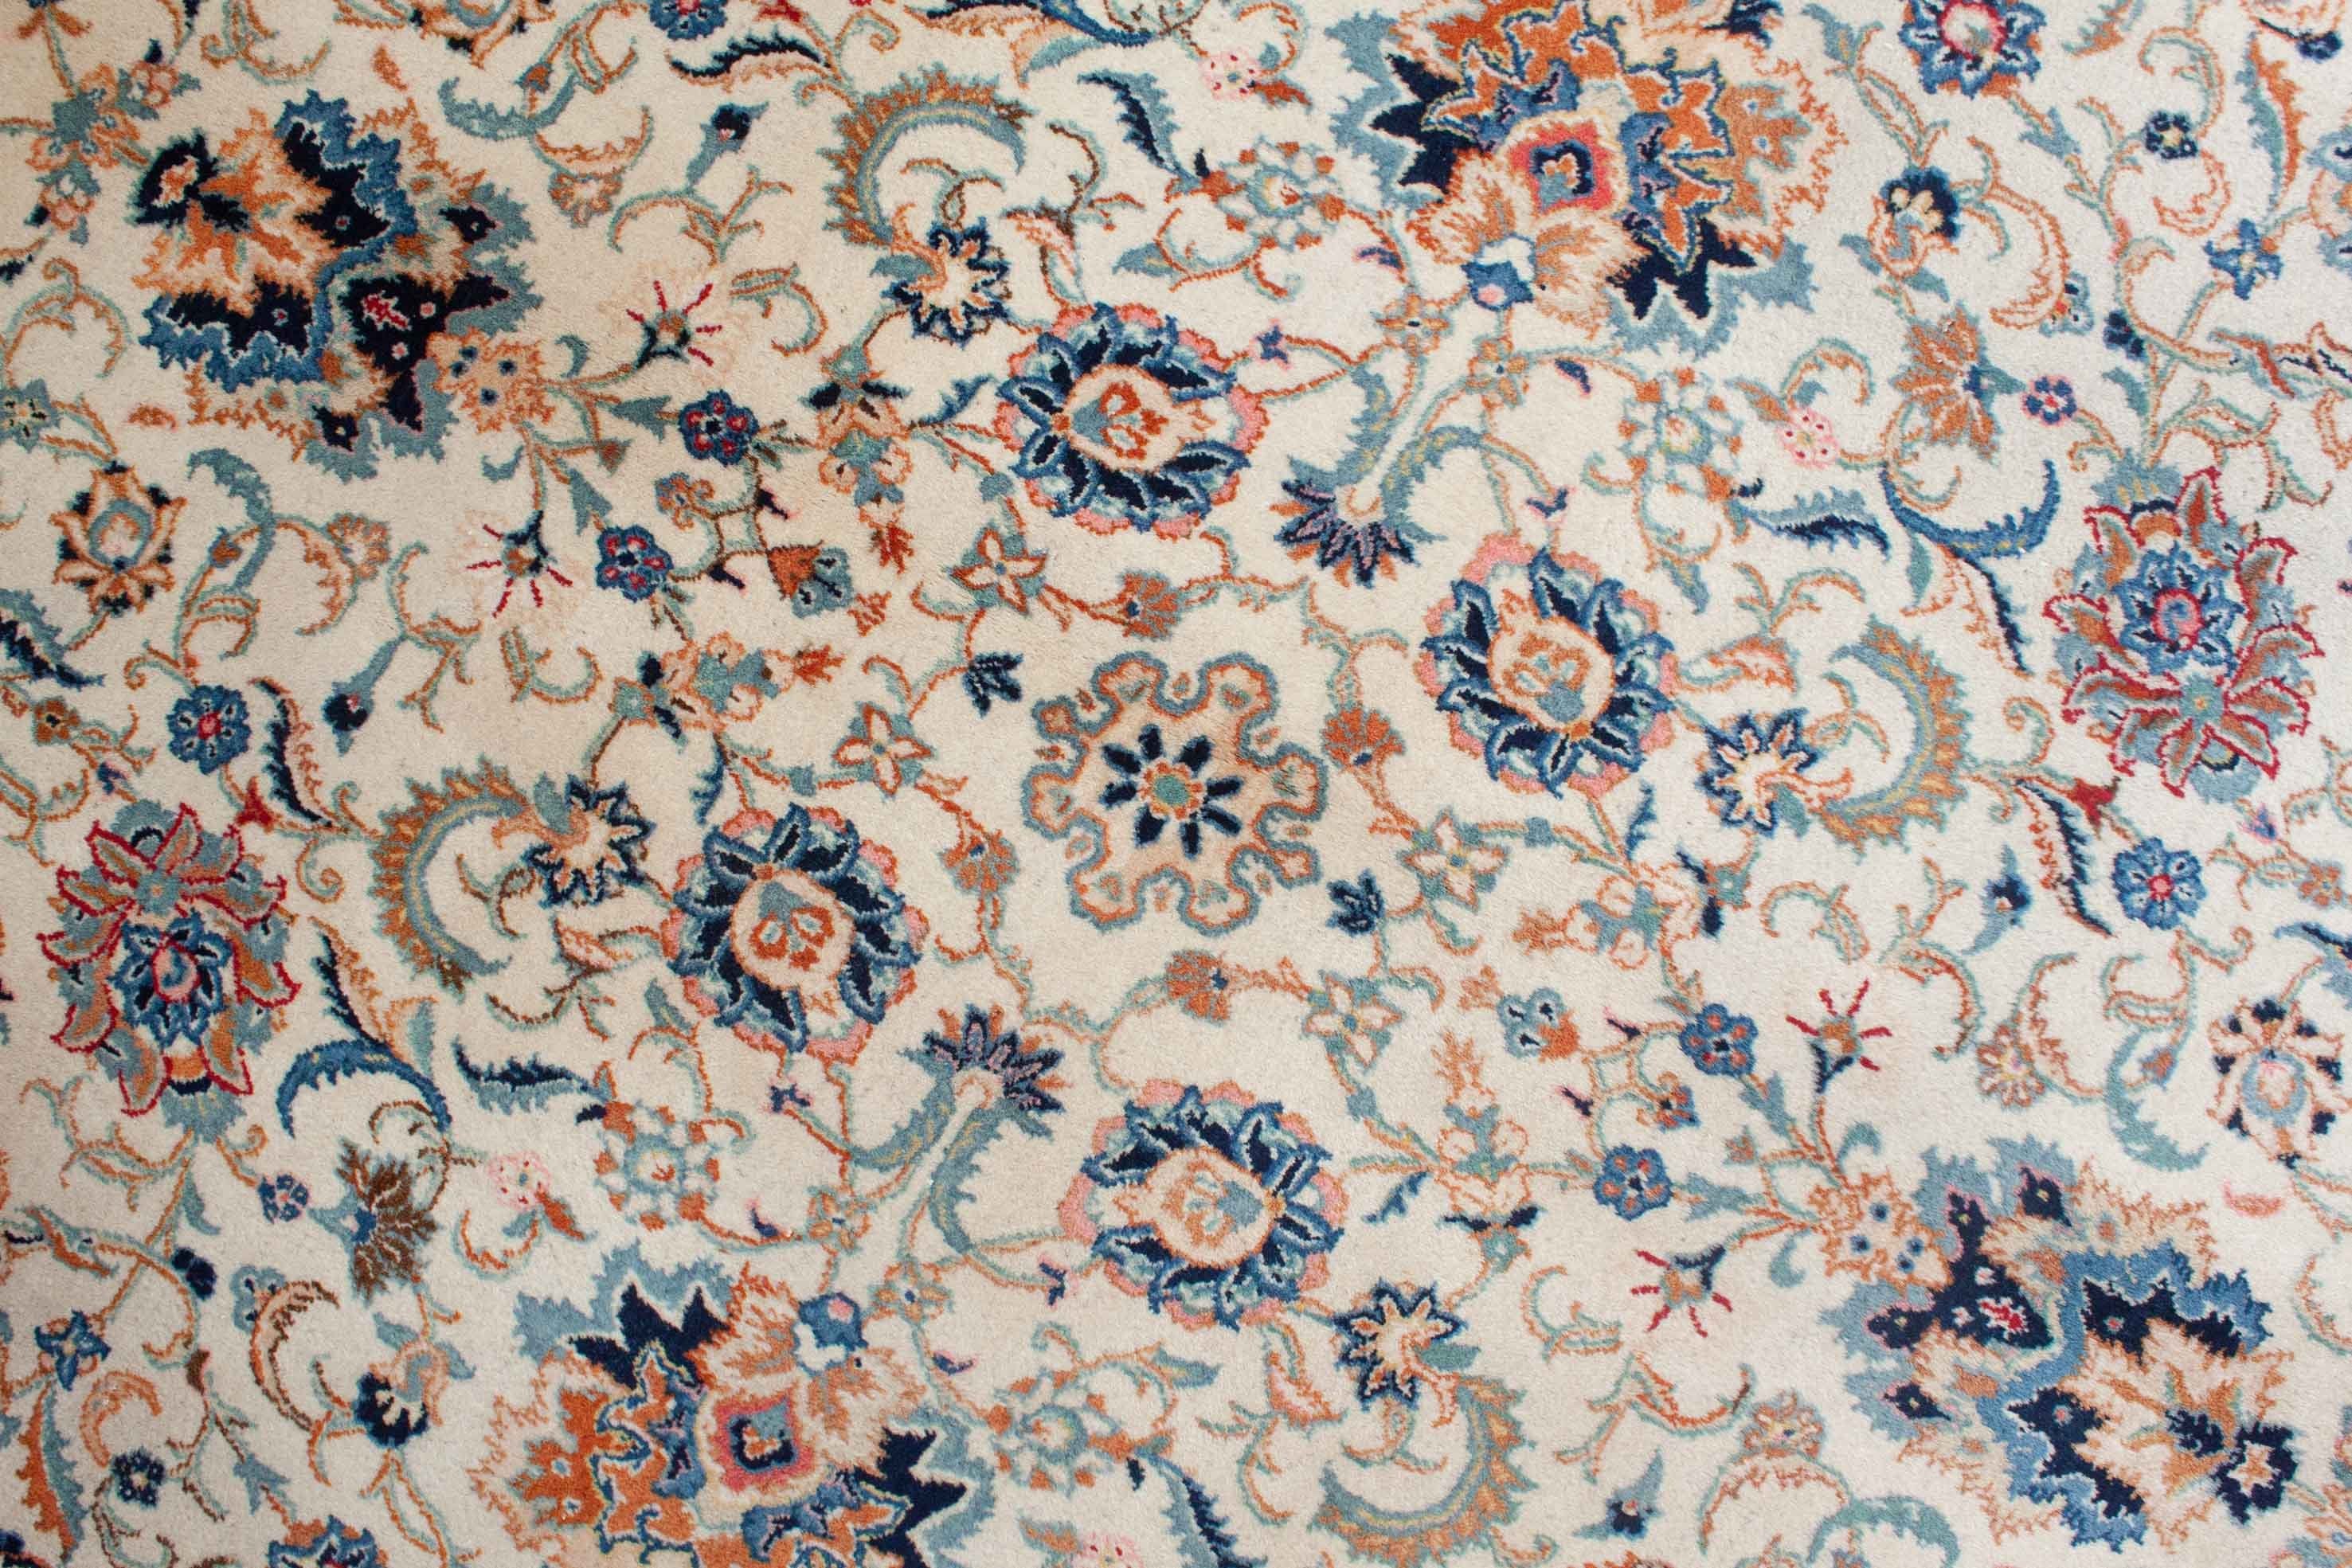 Eine Fotoaufnahme eines Keshan Teppichs.